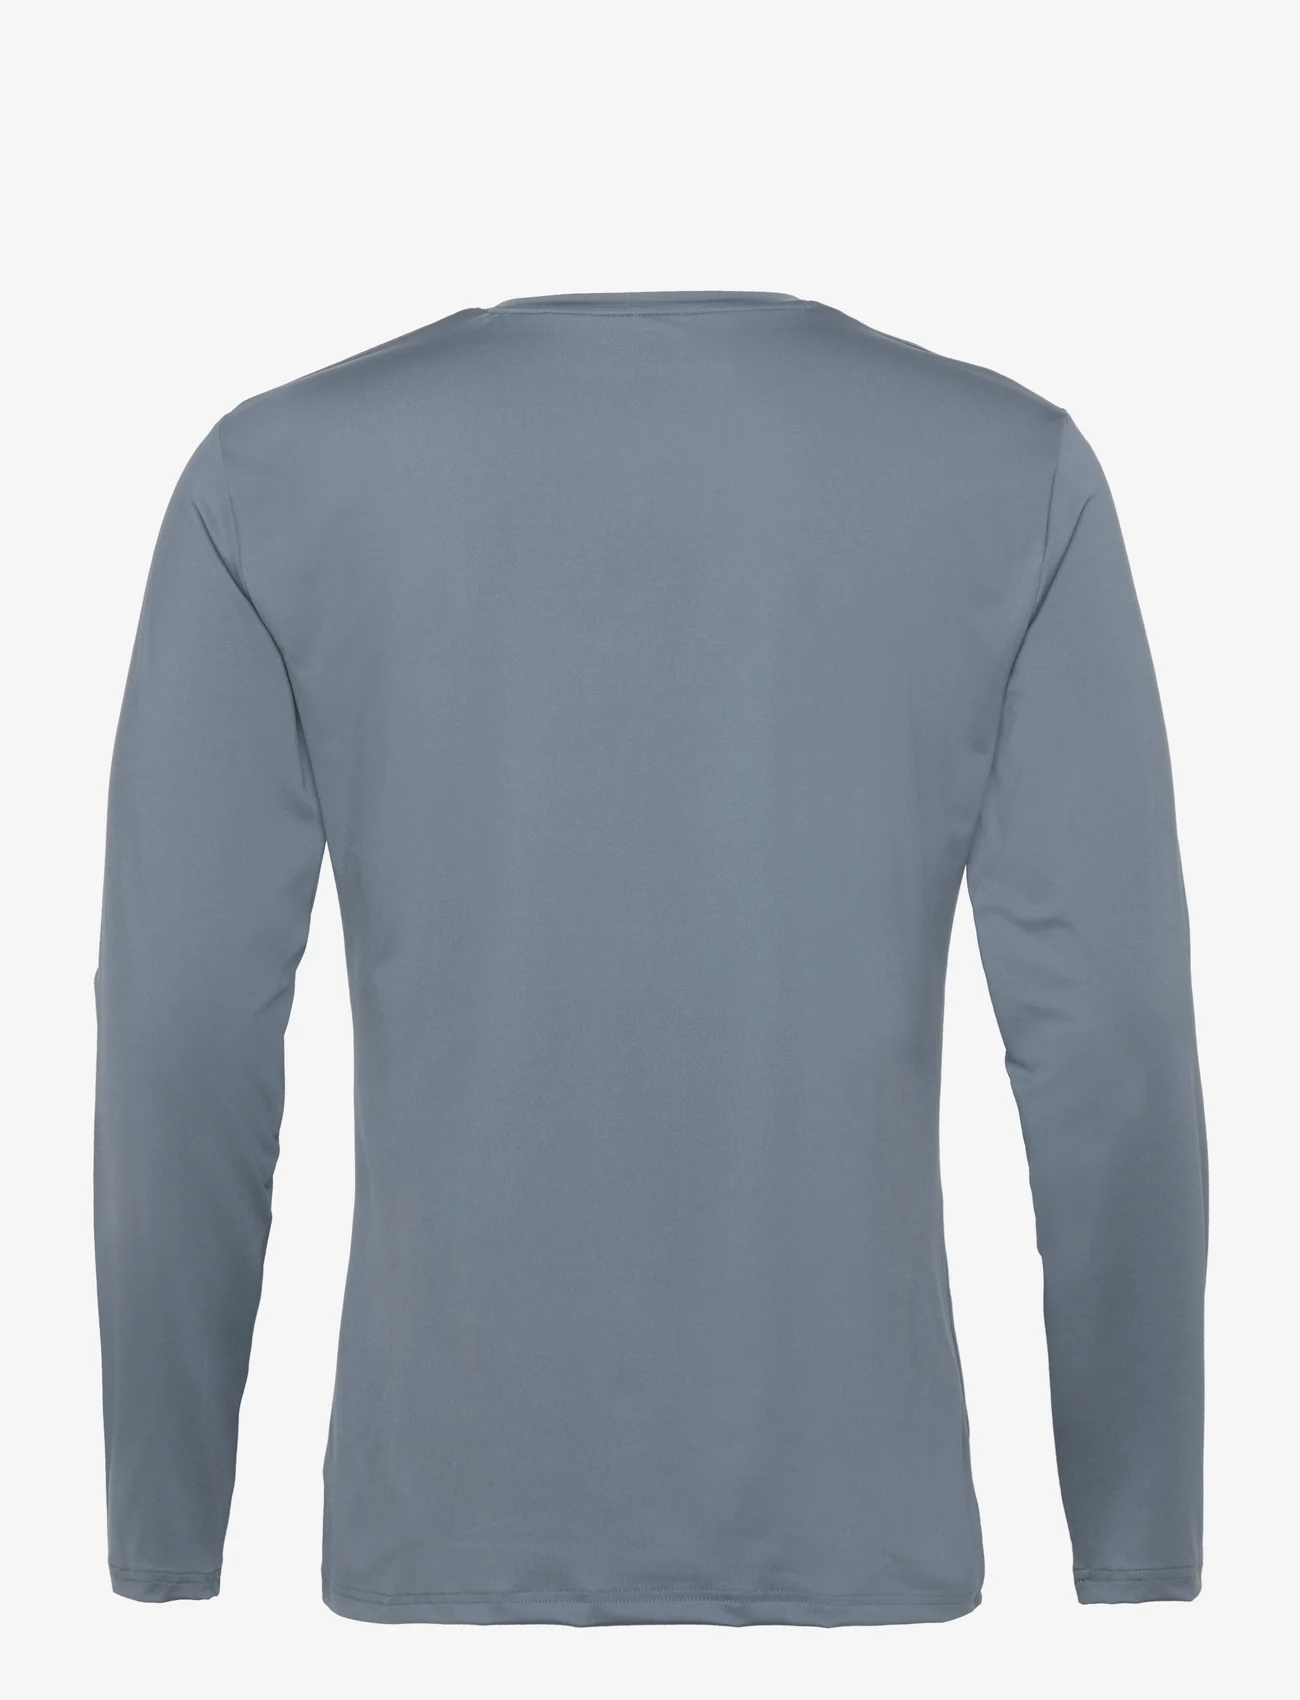 Bread & Boxers - Long Sleeve Active - laisvalaikio marškinėliai - orion blue - 1